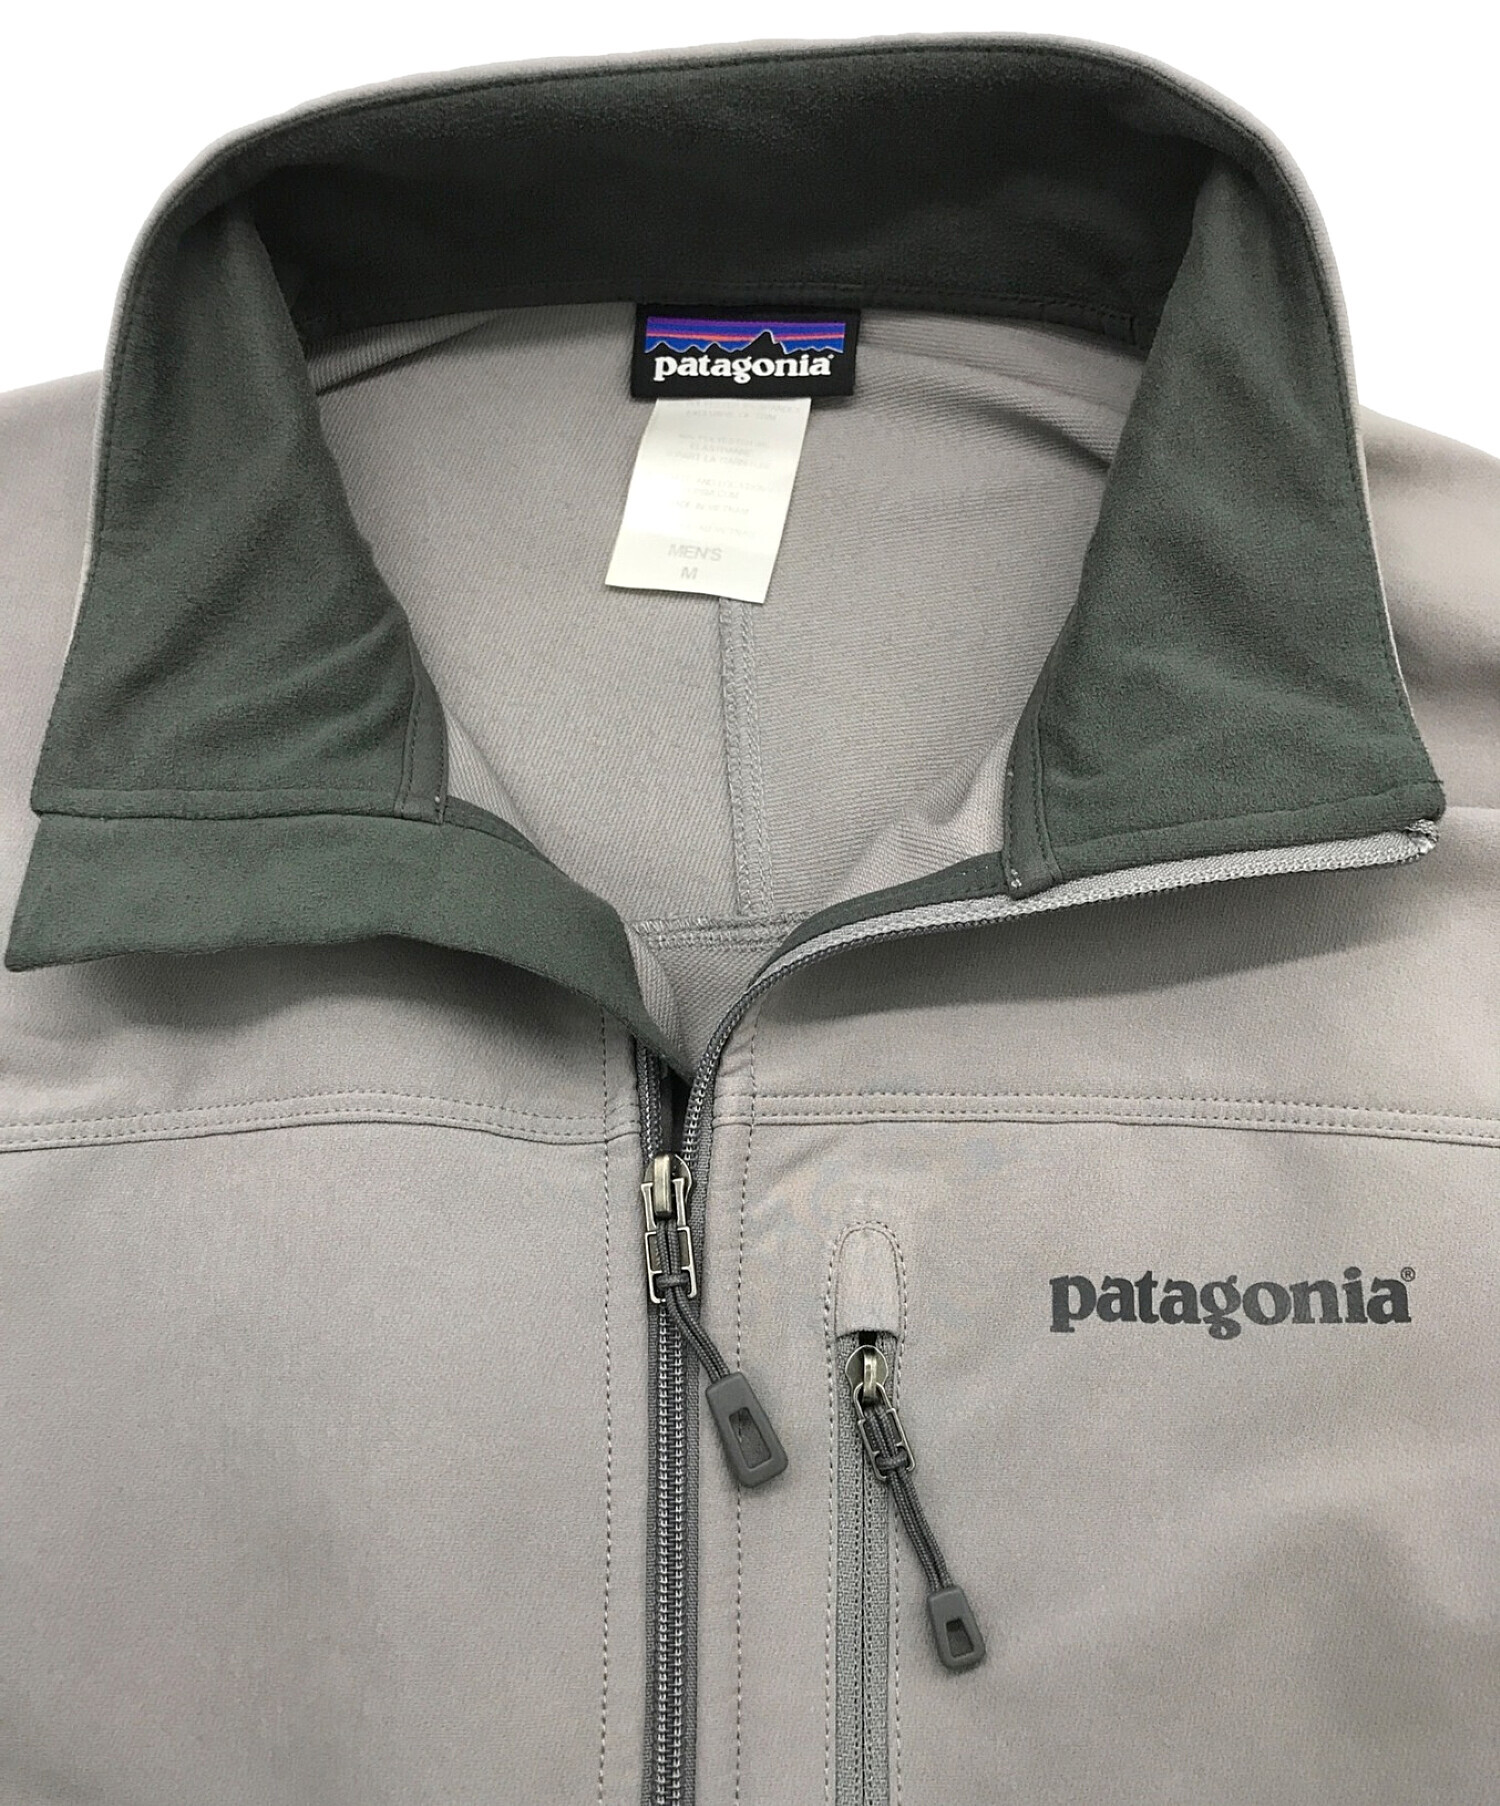 Patagonia (パタゴニア) シンプルガイドジャケット グレー サイズ:M